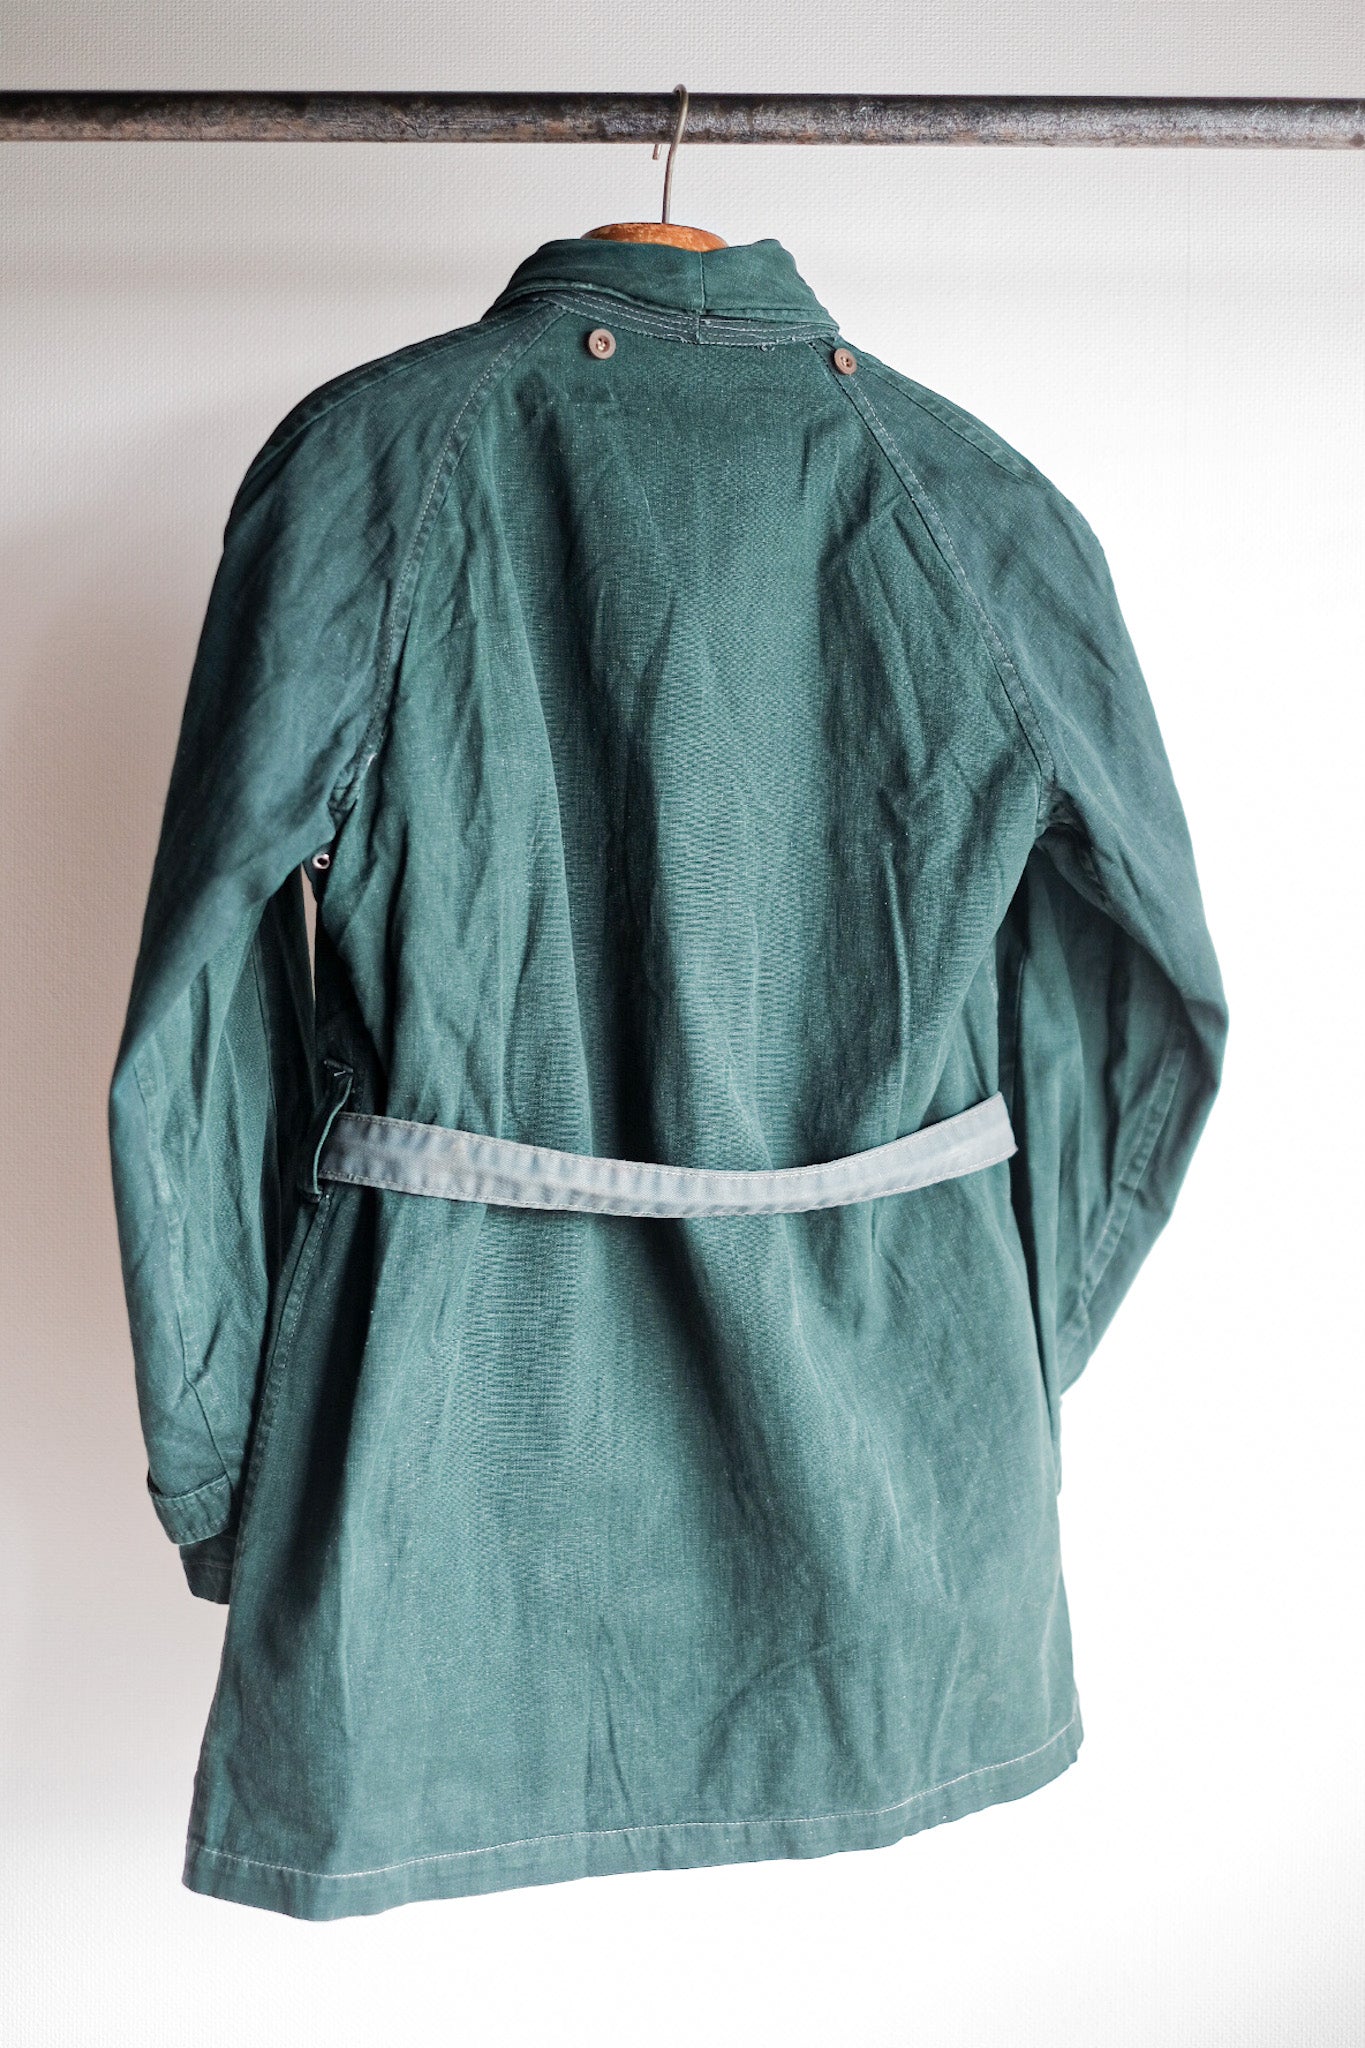 [~ 40 '] 프랑스 군대 더블 가슴 그린 리넨 캔버스 재킷